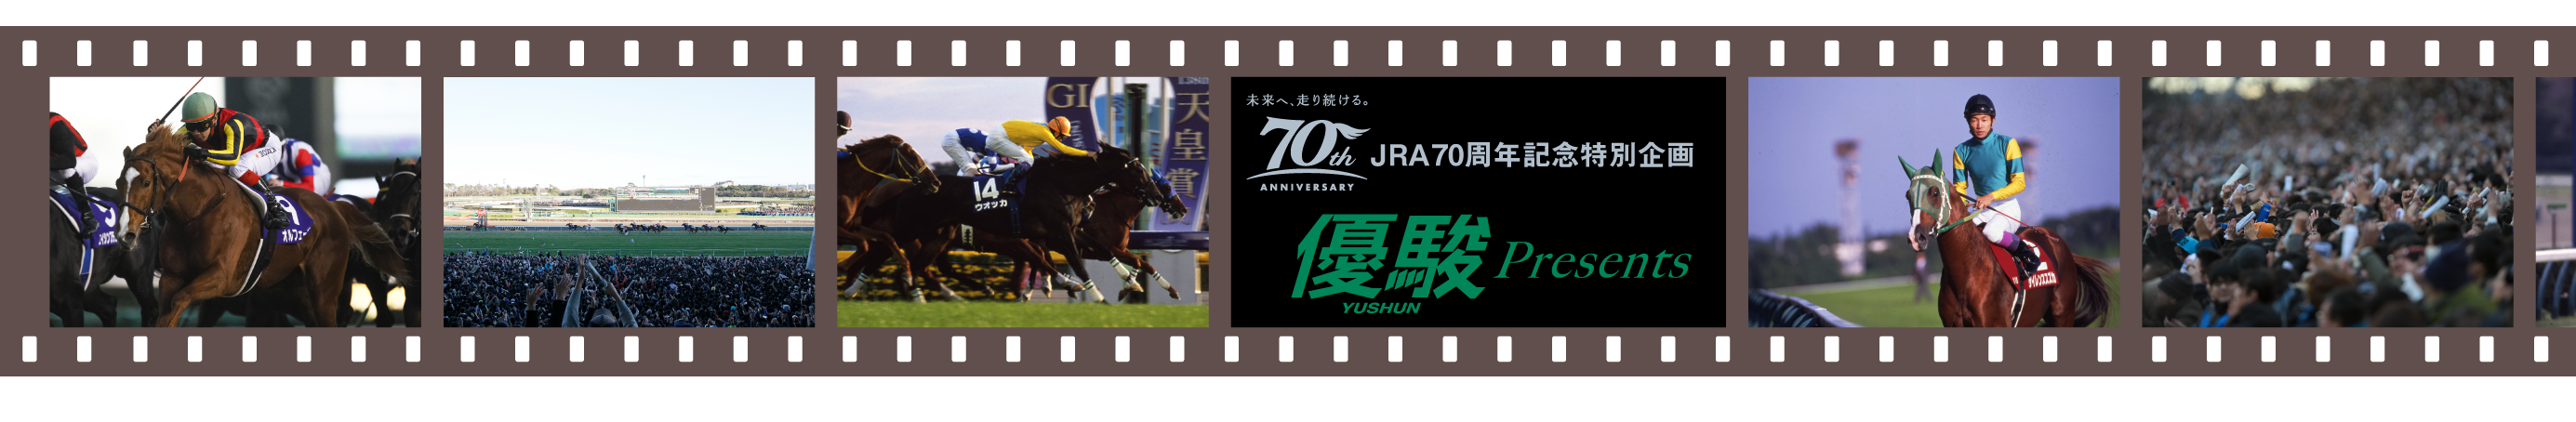 未来へ、走り続ける。70th ANNIVERSARY JRA70周年記念特別企画 優駿 YUSHUN Presents